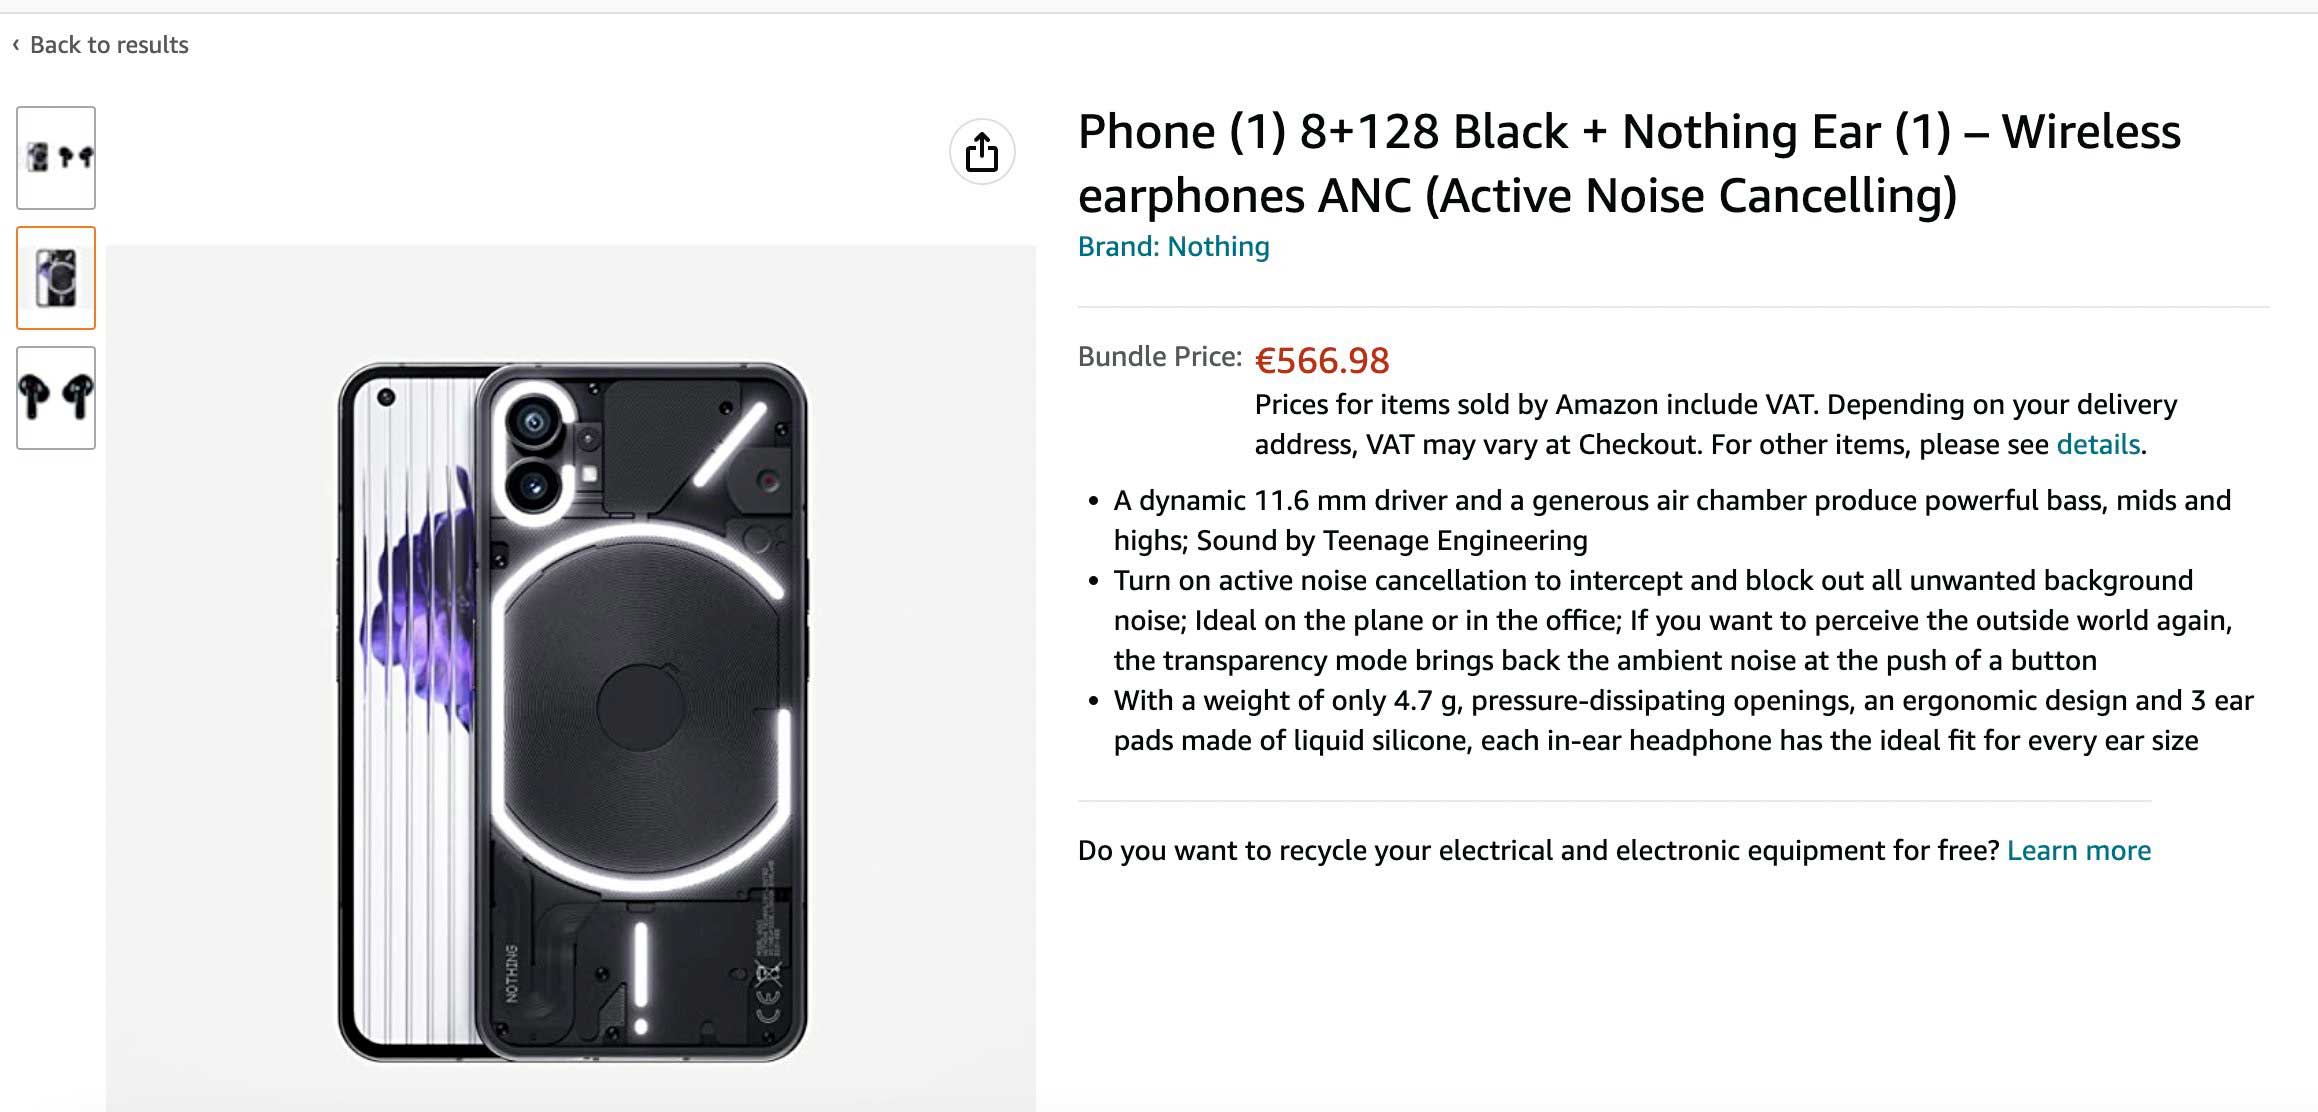 Nuevos datos del Nothing Phone (1), incluyendo posibles precios en Europa 105